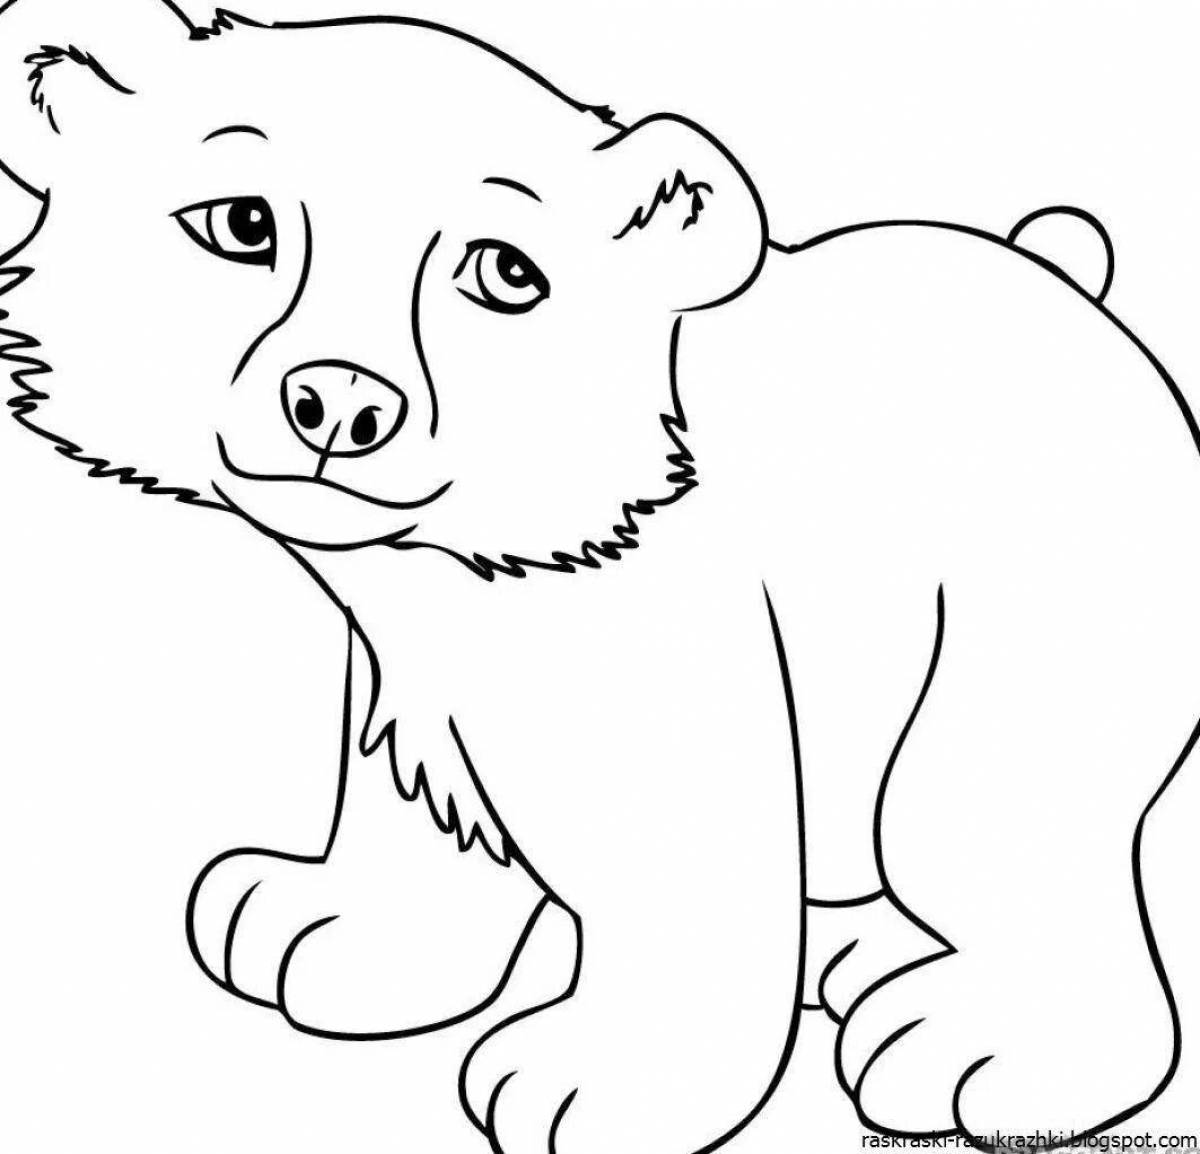 Распечатка медведя. Раскраска. Медвежонок. Раскраски животных для детей. Раскраска малышам животные. Медведь раскраска.